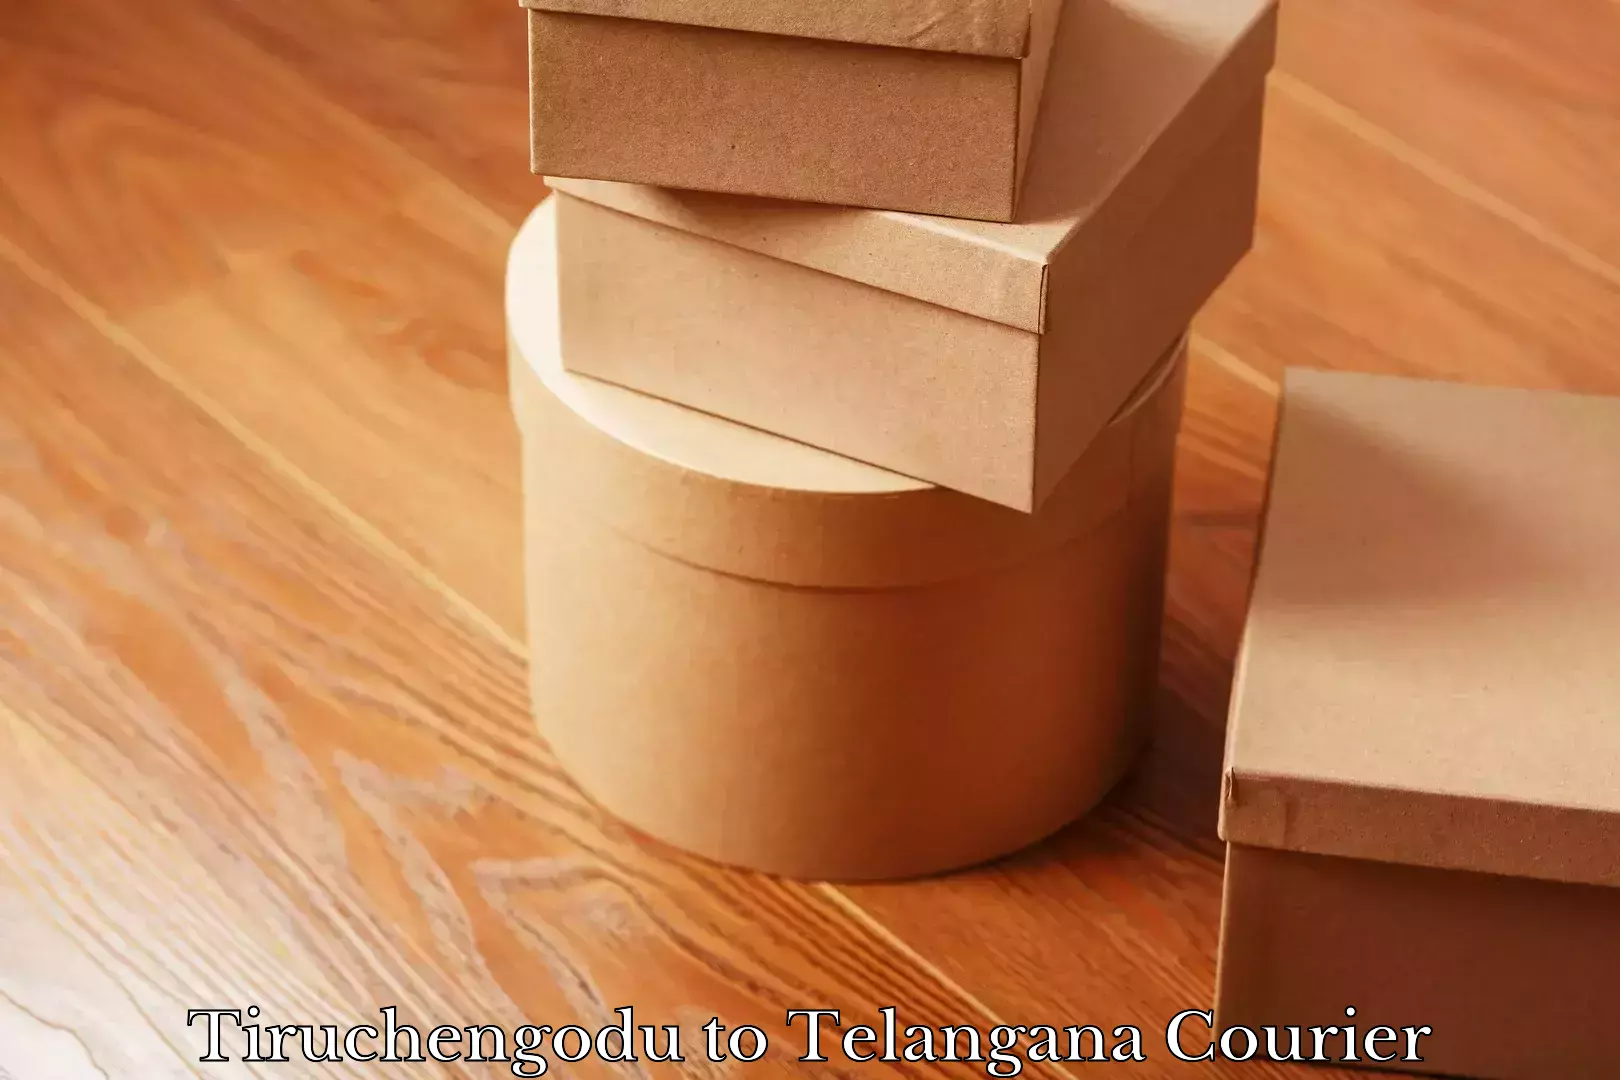 Automated parcel services Tiruchengodu to Telangana